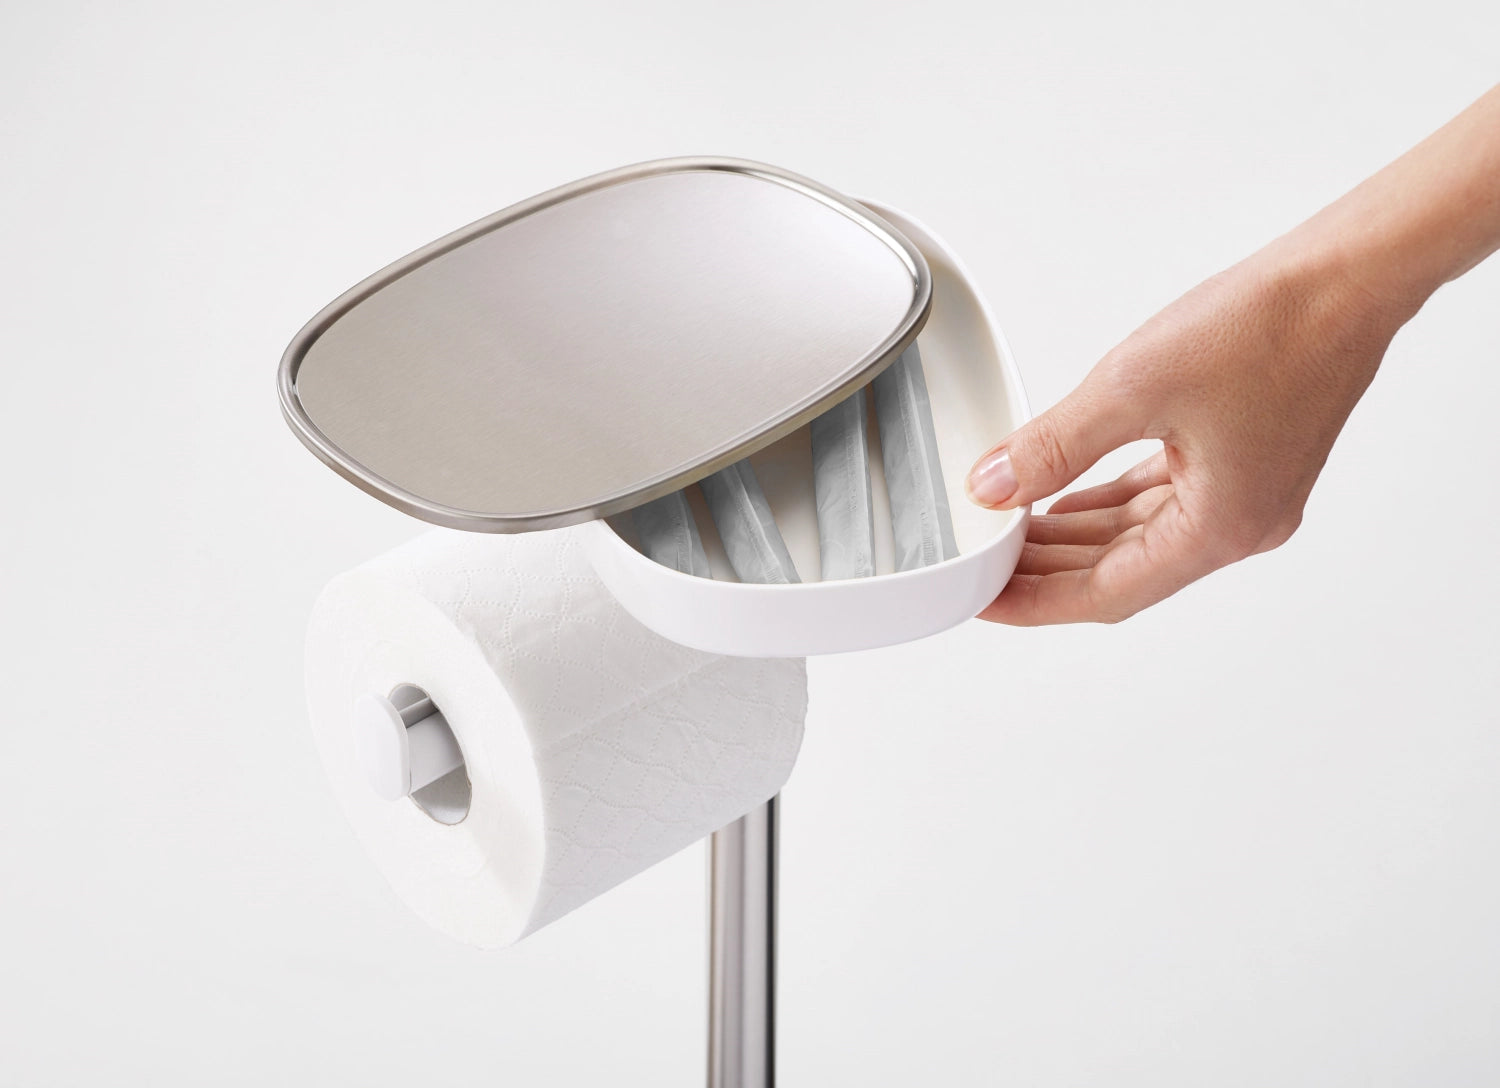 EasyStore Toilettenpapier-Ständer - KAQTU Design